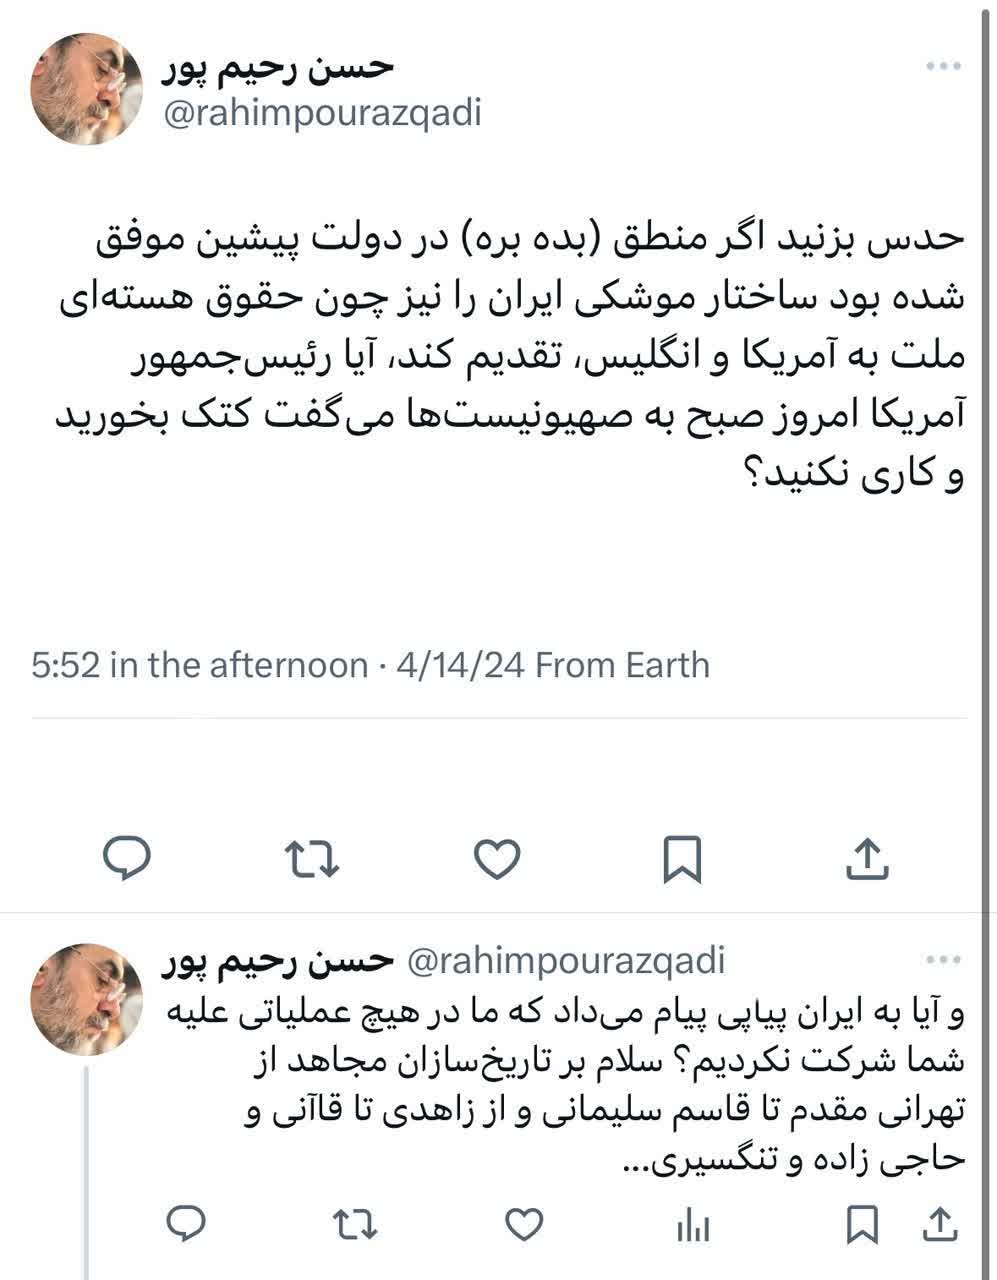 توئیت جدید رحیم پورازغدی درباره عملیات وعده صادق +توئیت